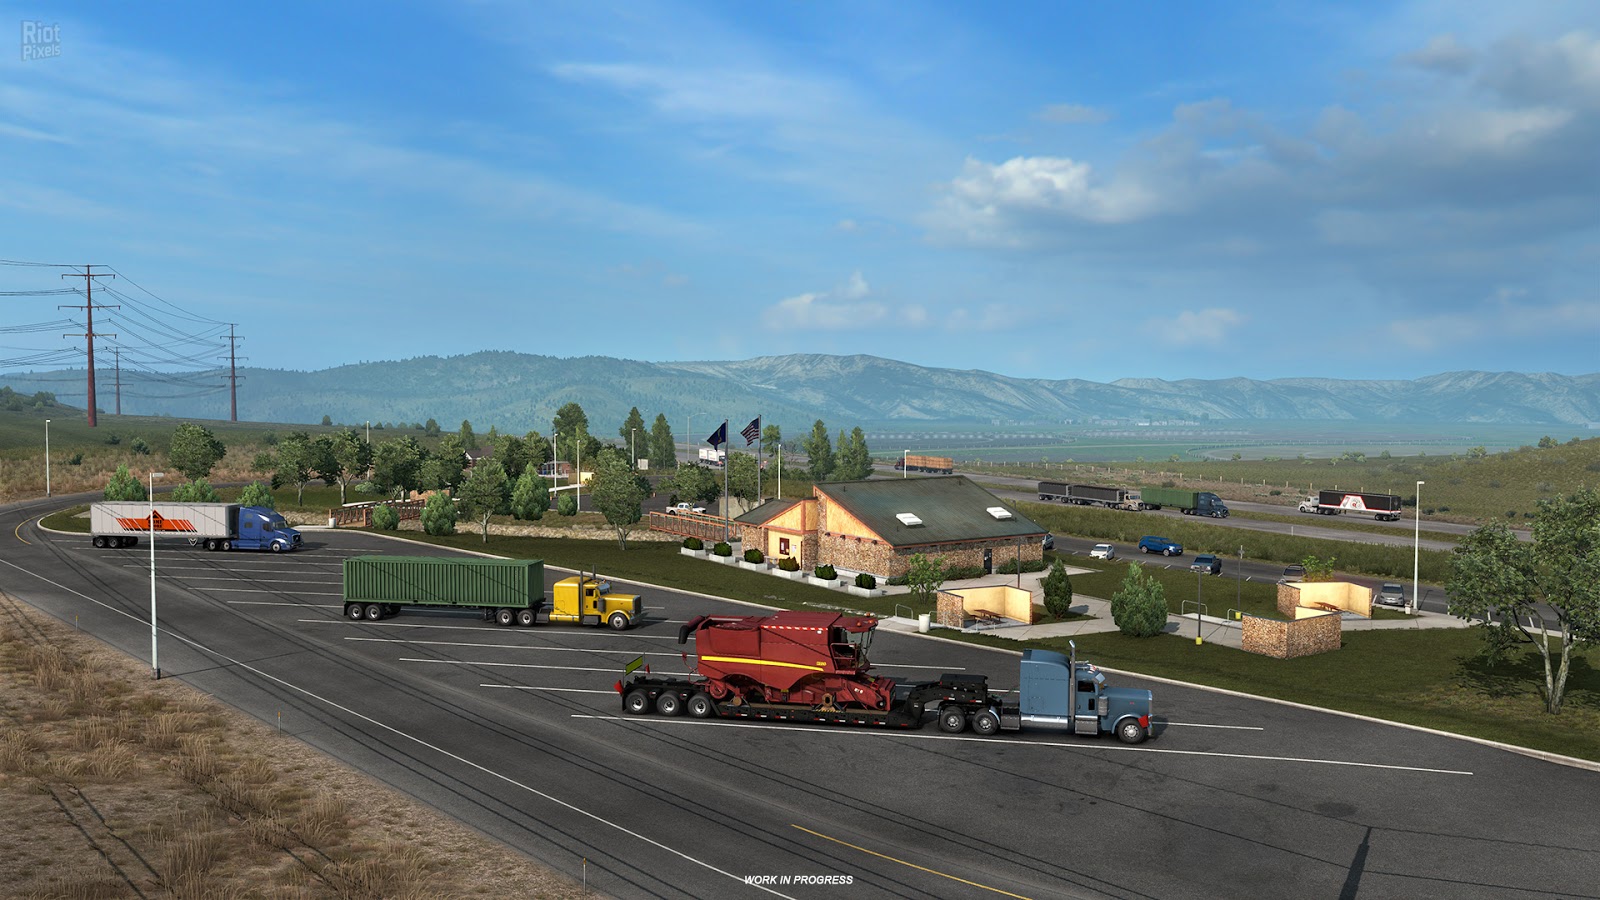 american truck simulator download free tpb